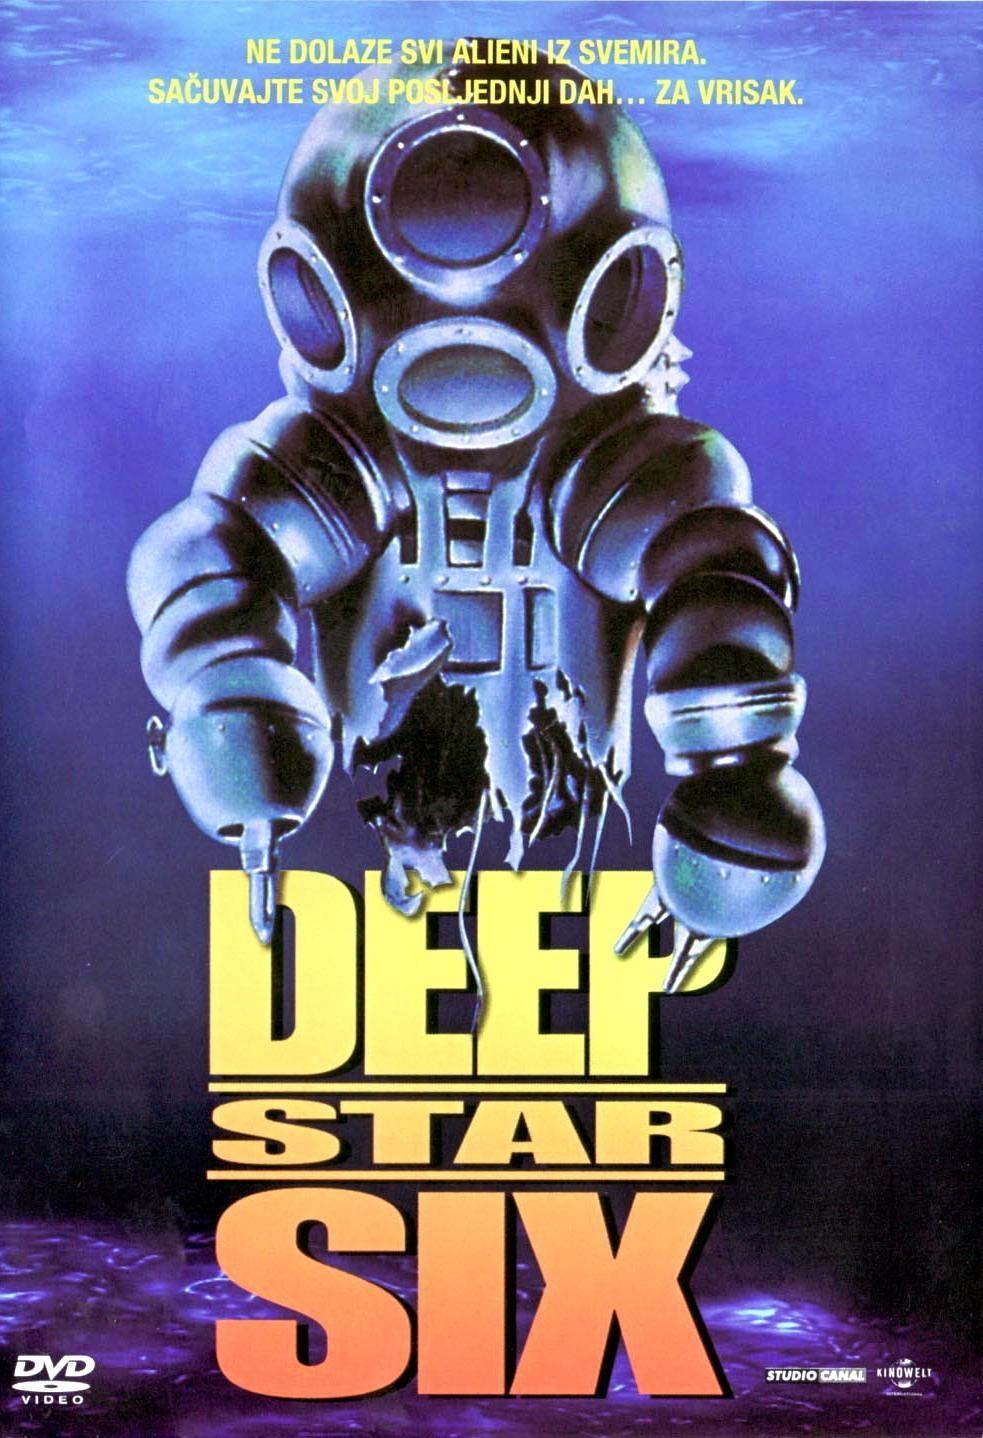 Постер фильма Глубоководная звезда шесть | DeepStar Six